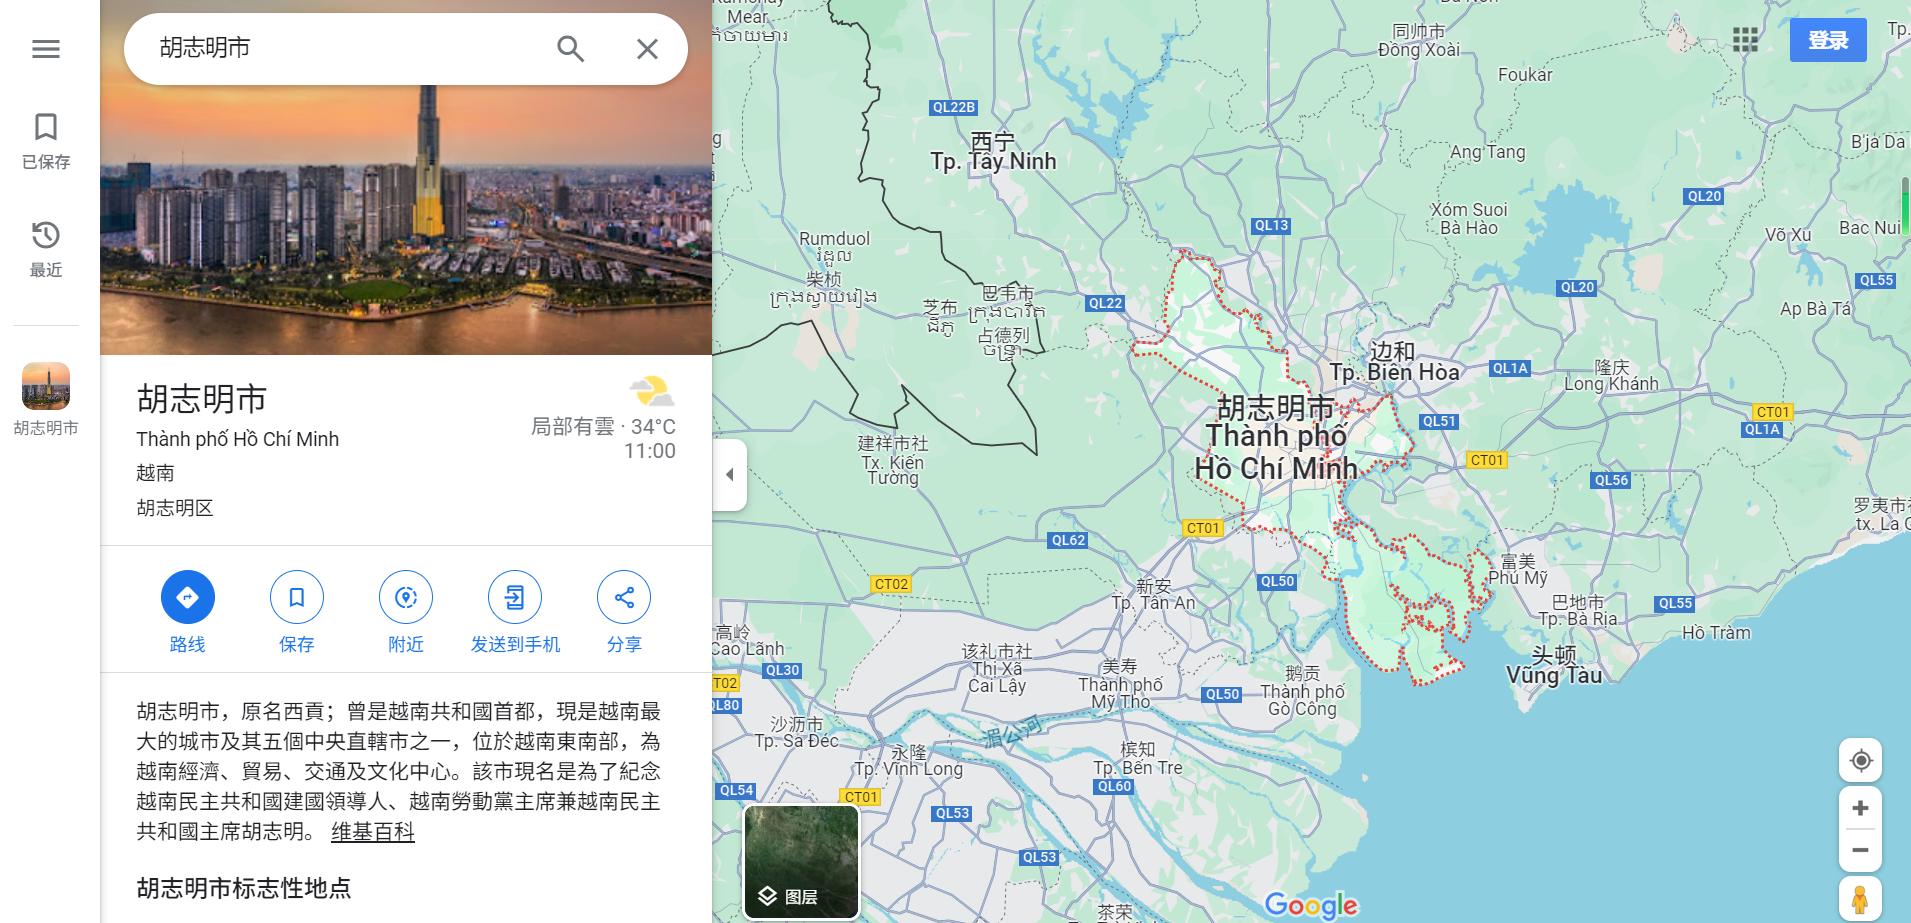 谷歌地图定位越南地区